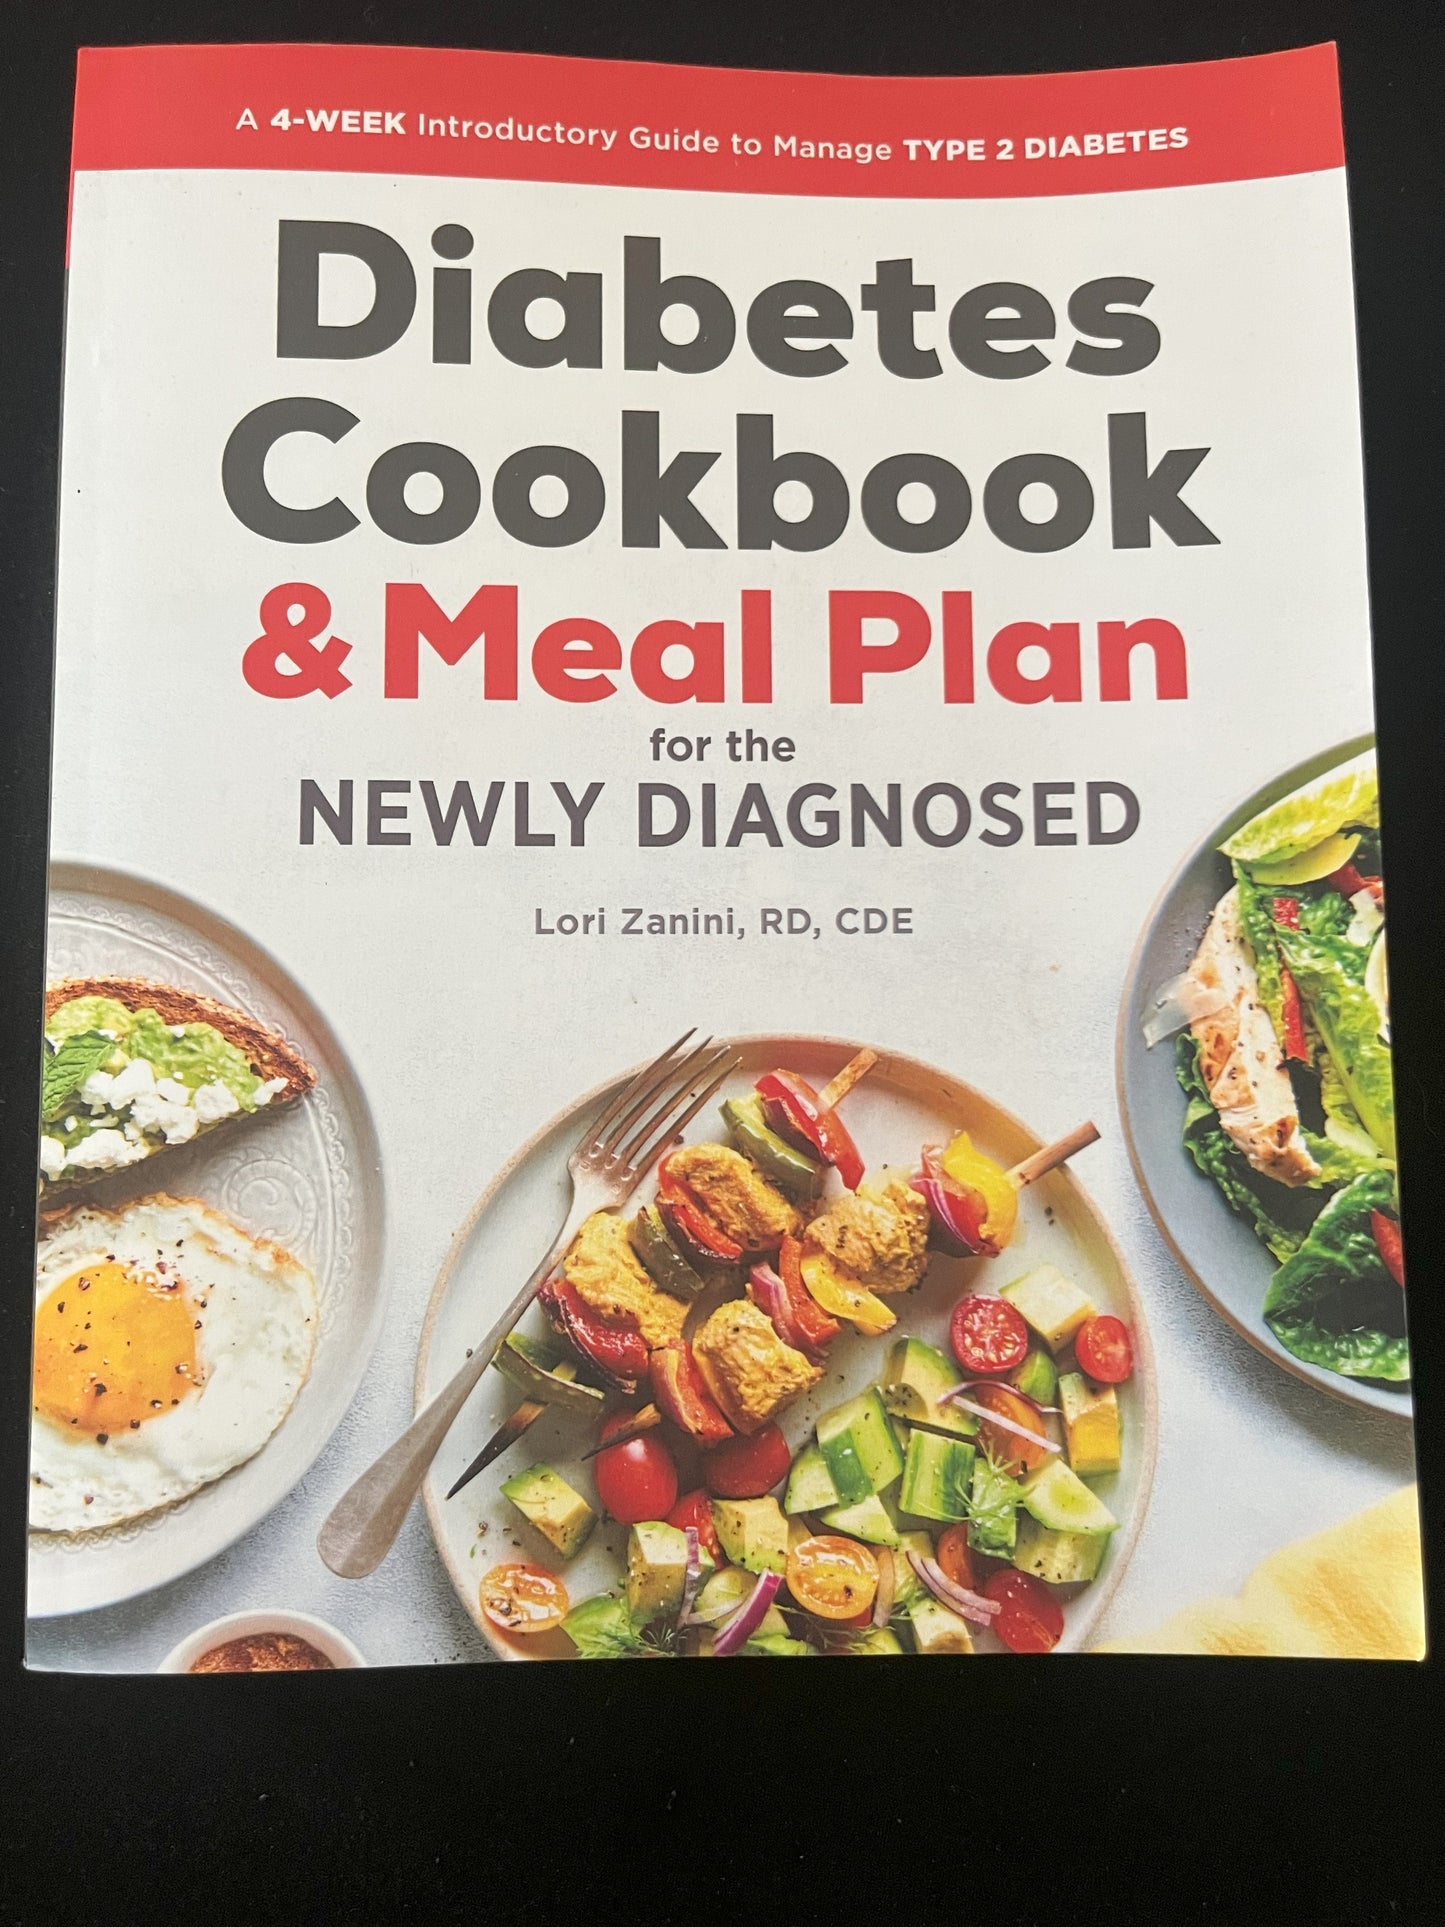 Diabetes Cookbook & Meal Plan by Lori Zanini